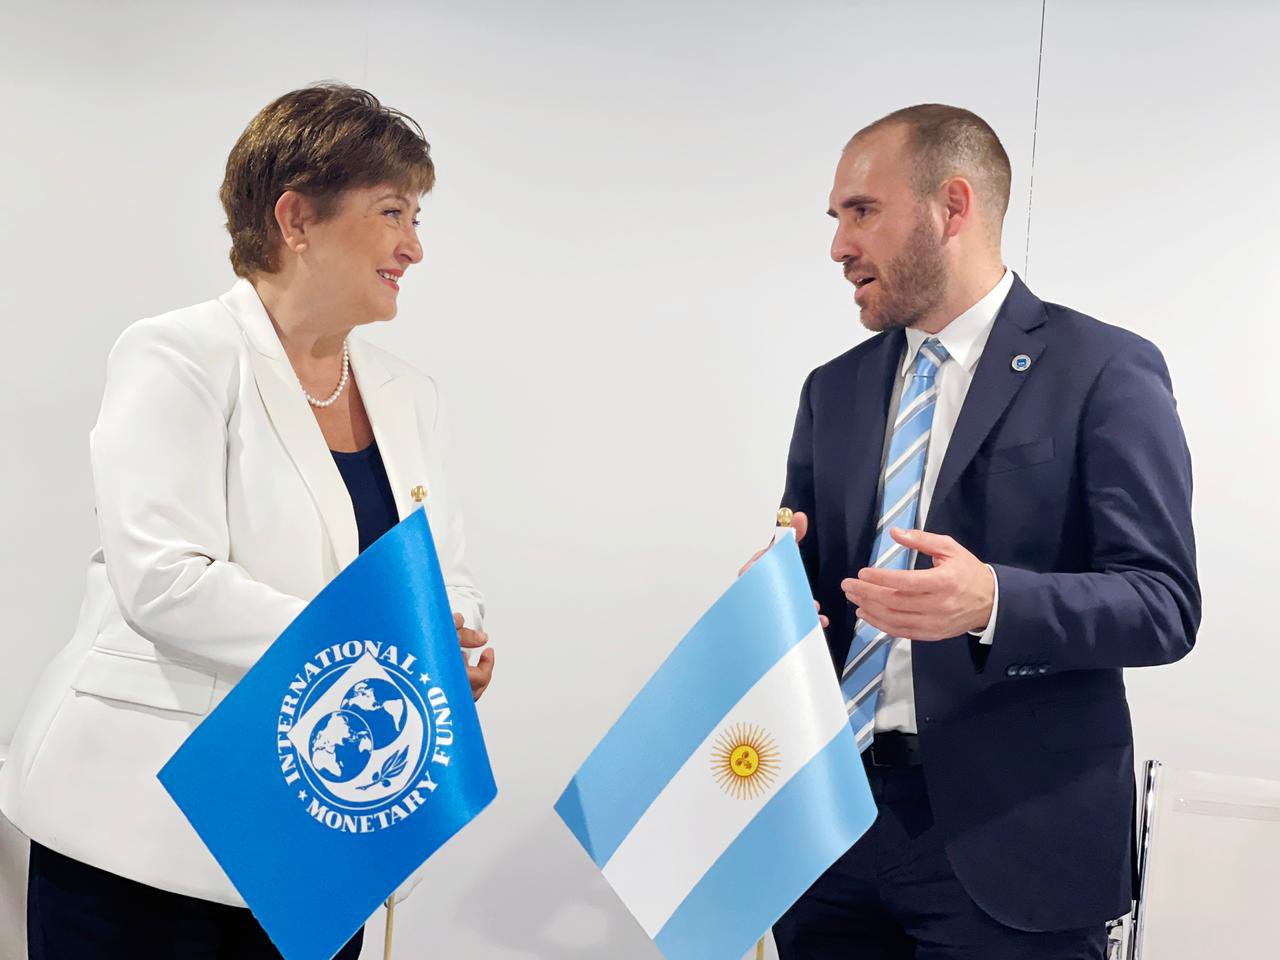 El FMI manifestó su intención de apoyar a Argentina para enfrentar la balanza de pagos y alcanzar estabilidad económica.